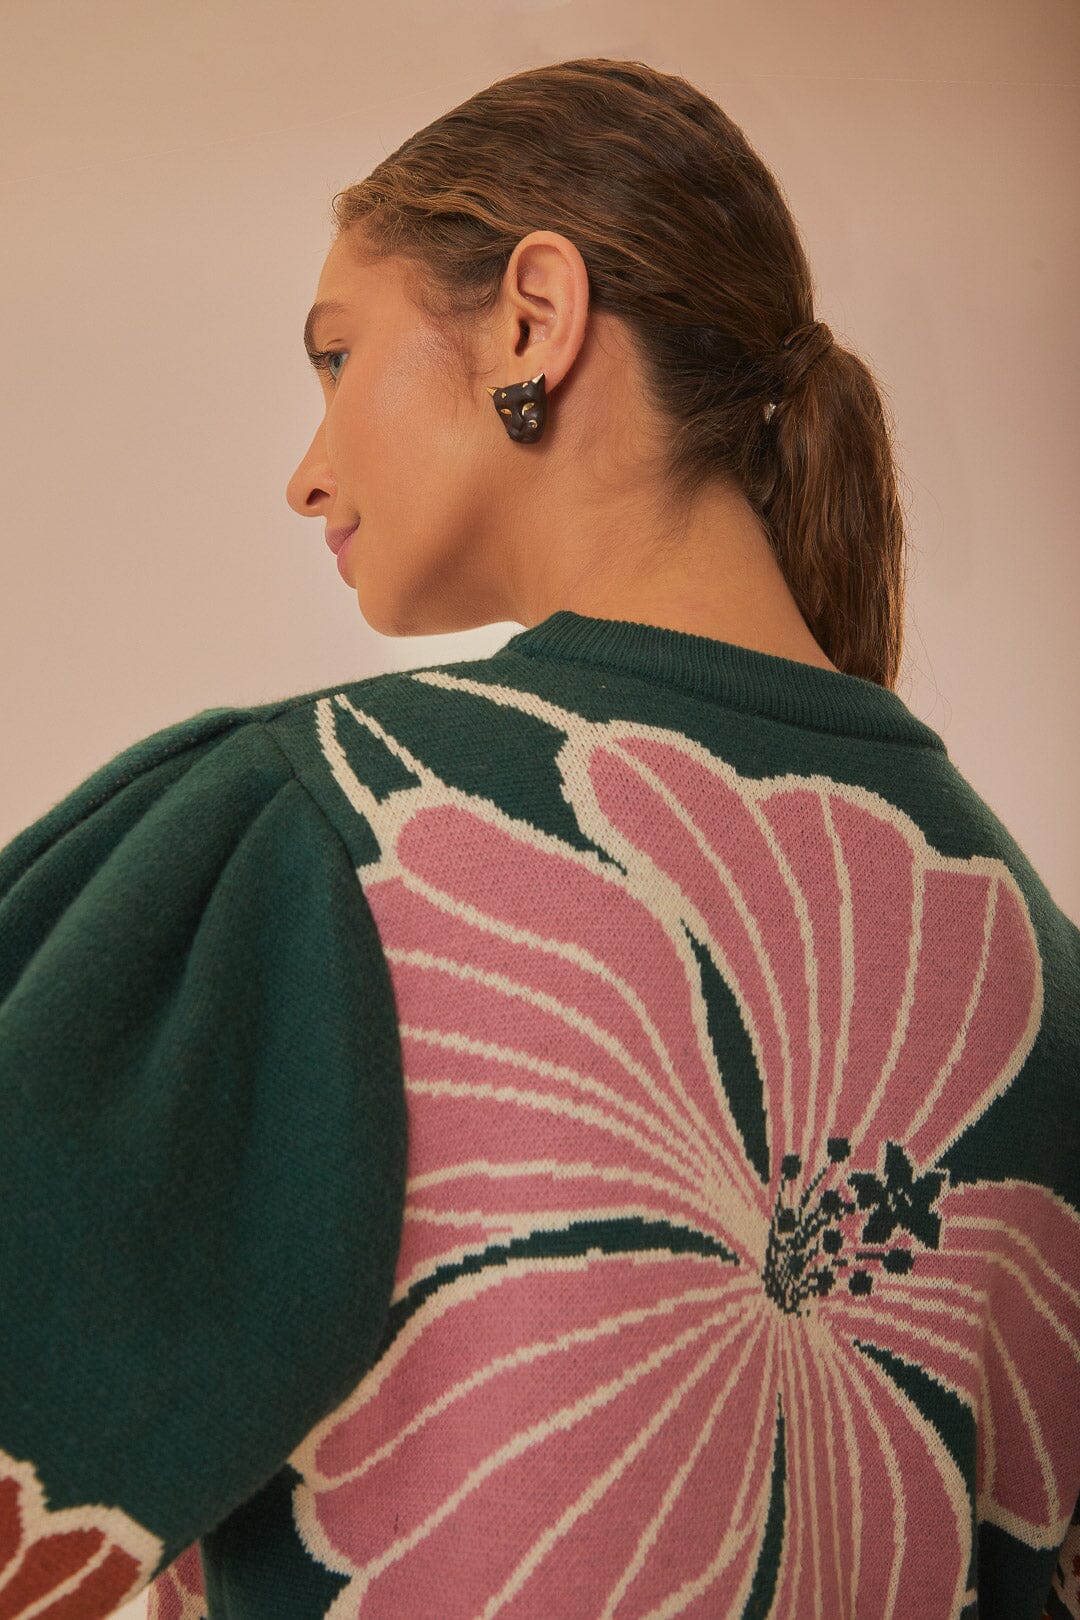 Green Honolulu Flowers Knit Sweater